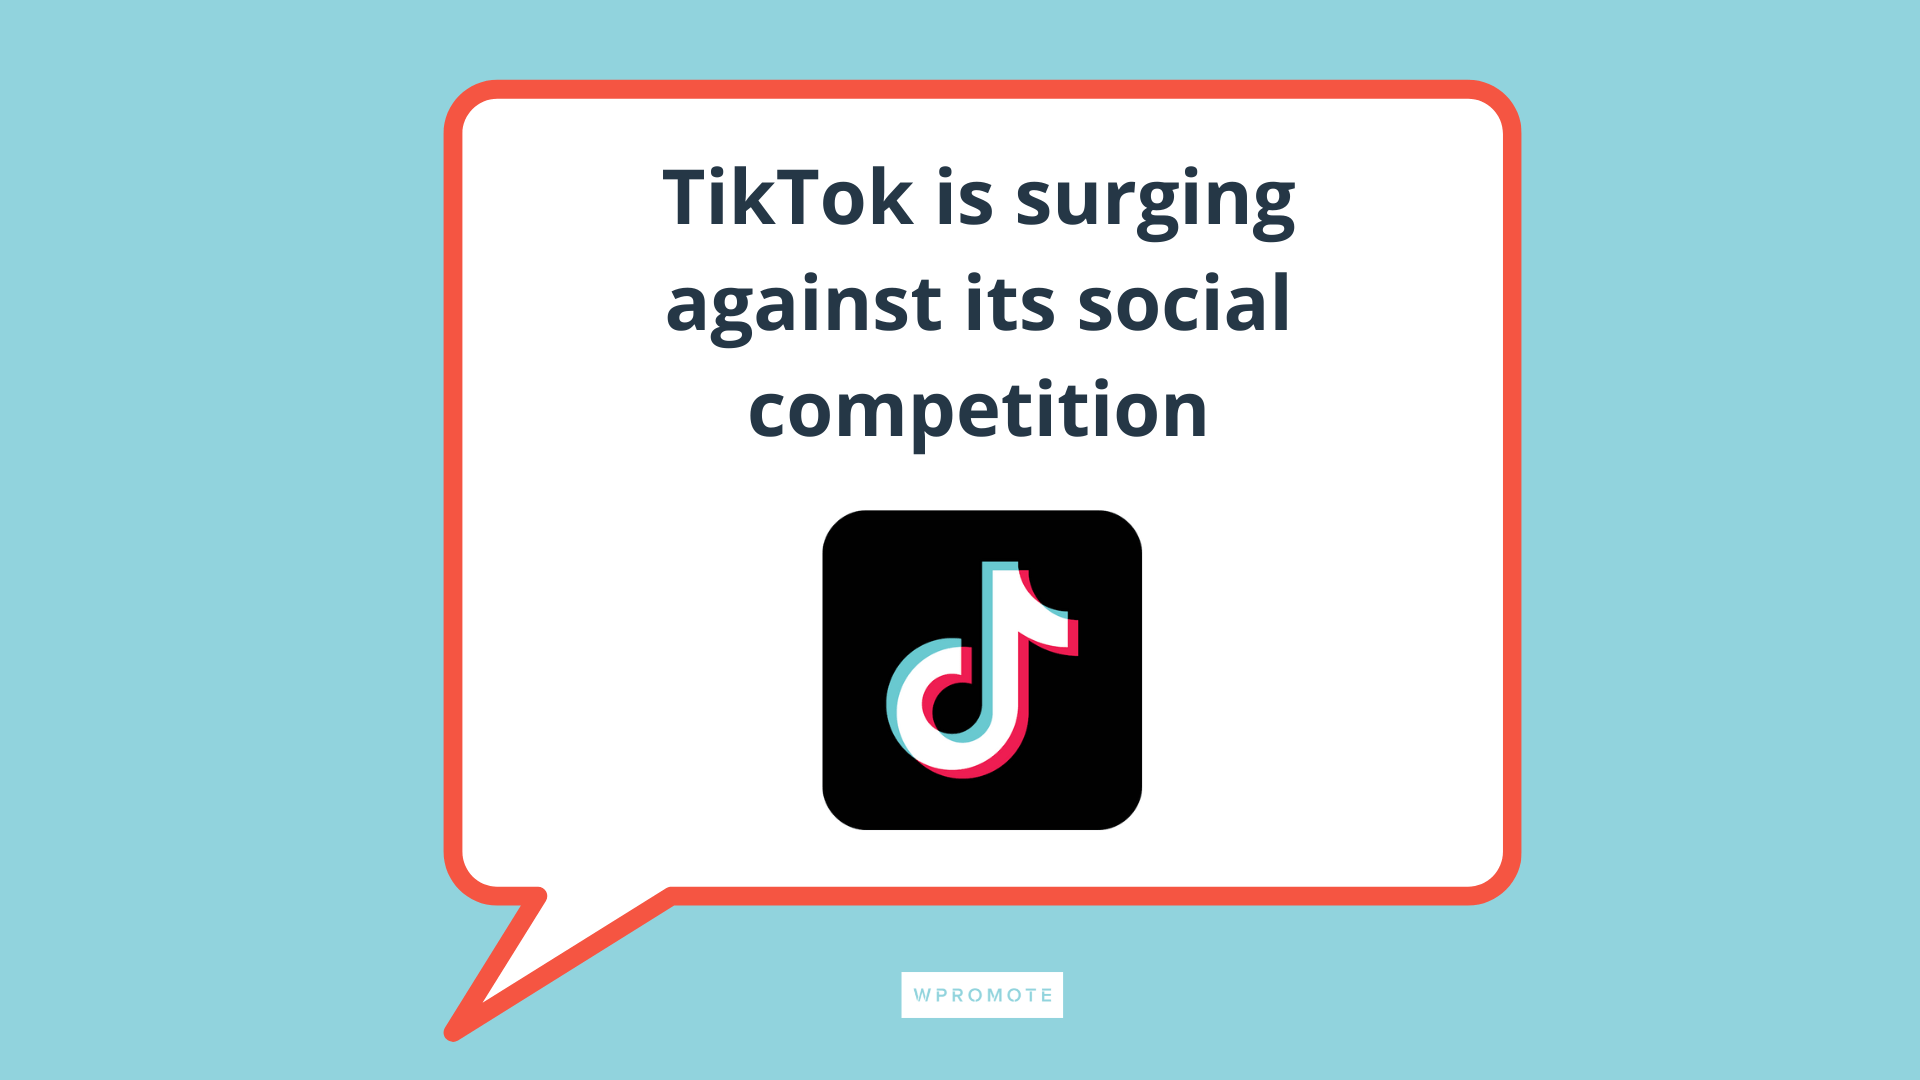 TikTok symbol in speech bubble